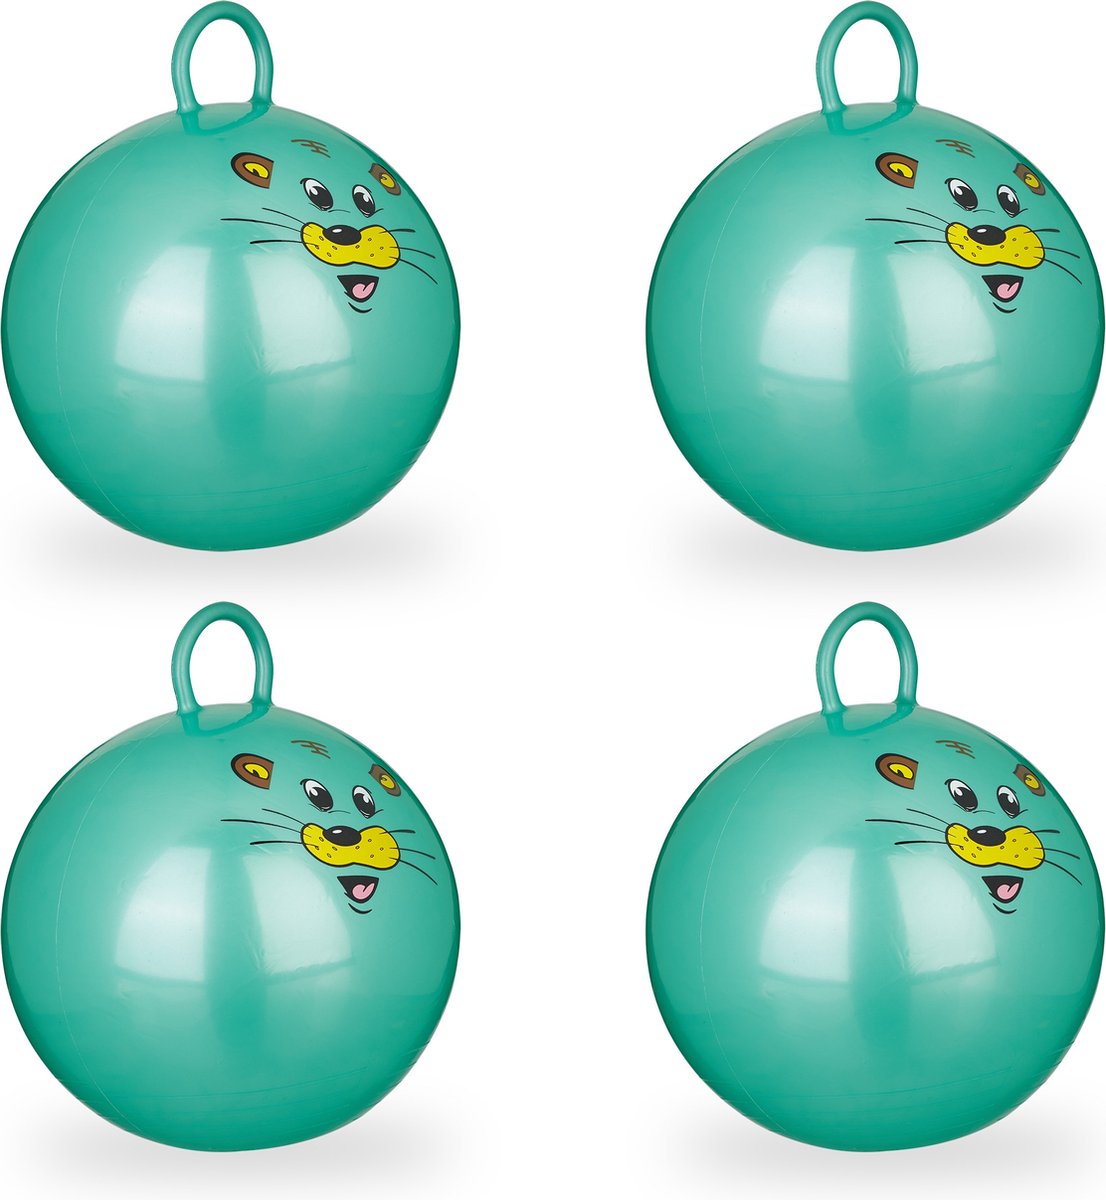 Relaxdays 4 x skippybal in set - voor kinderen - muis design - springbal - groen